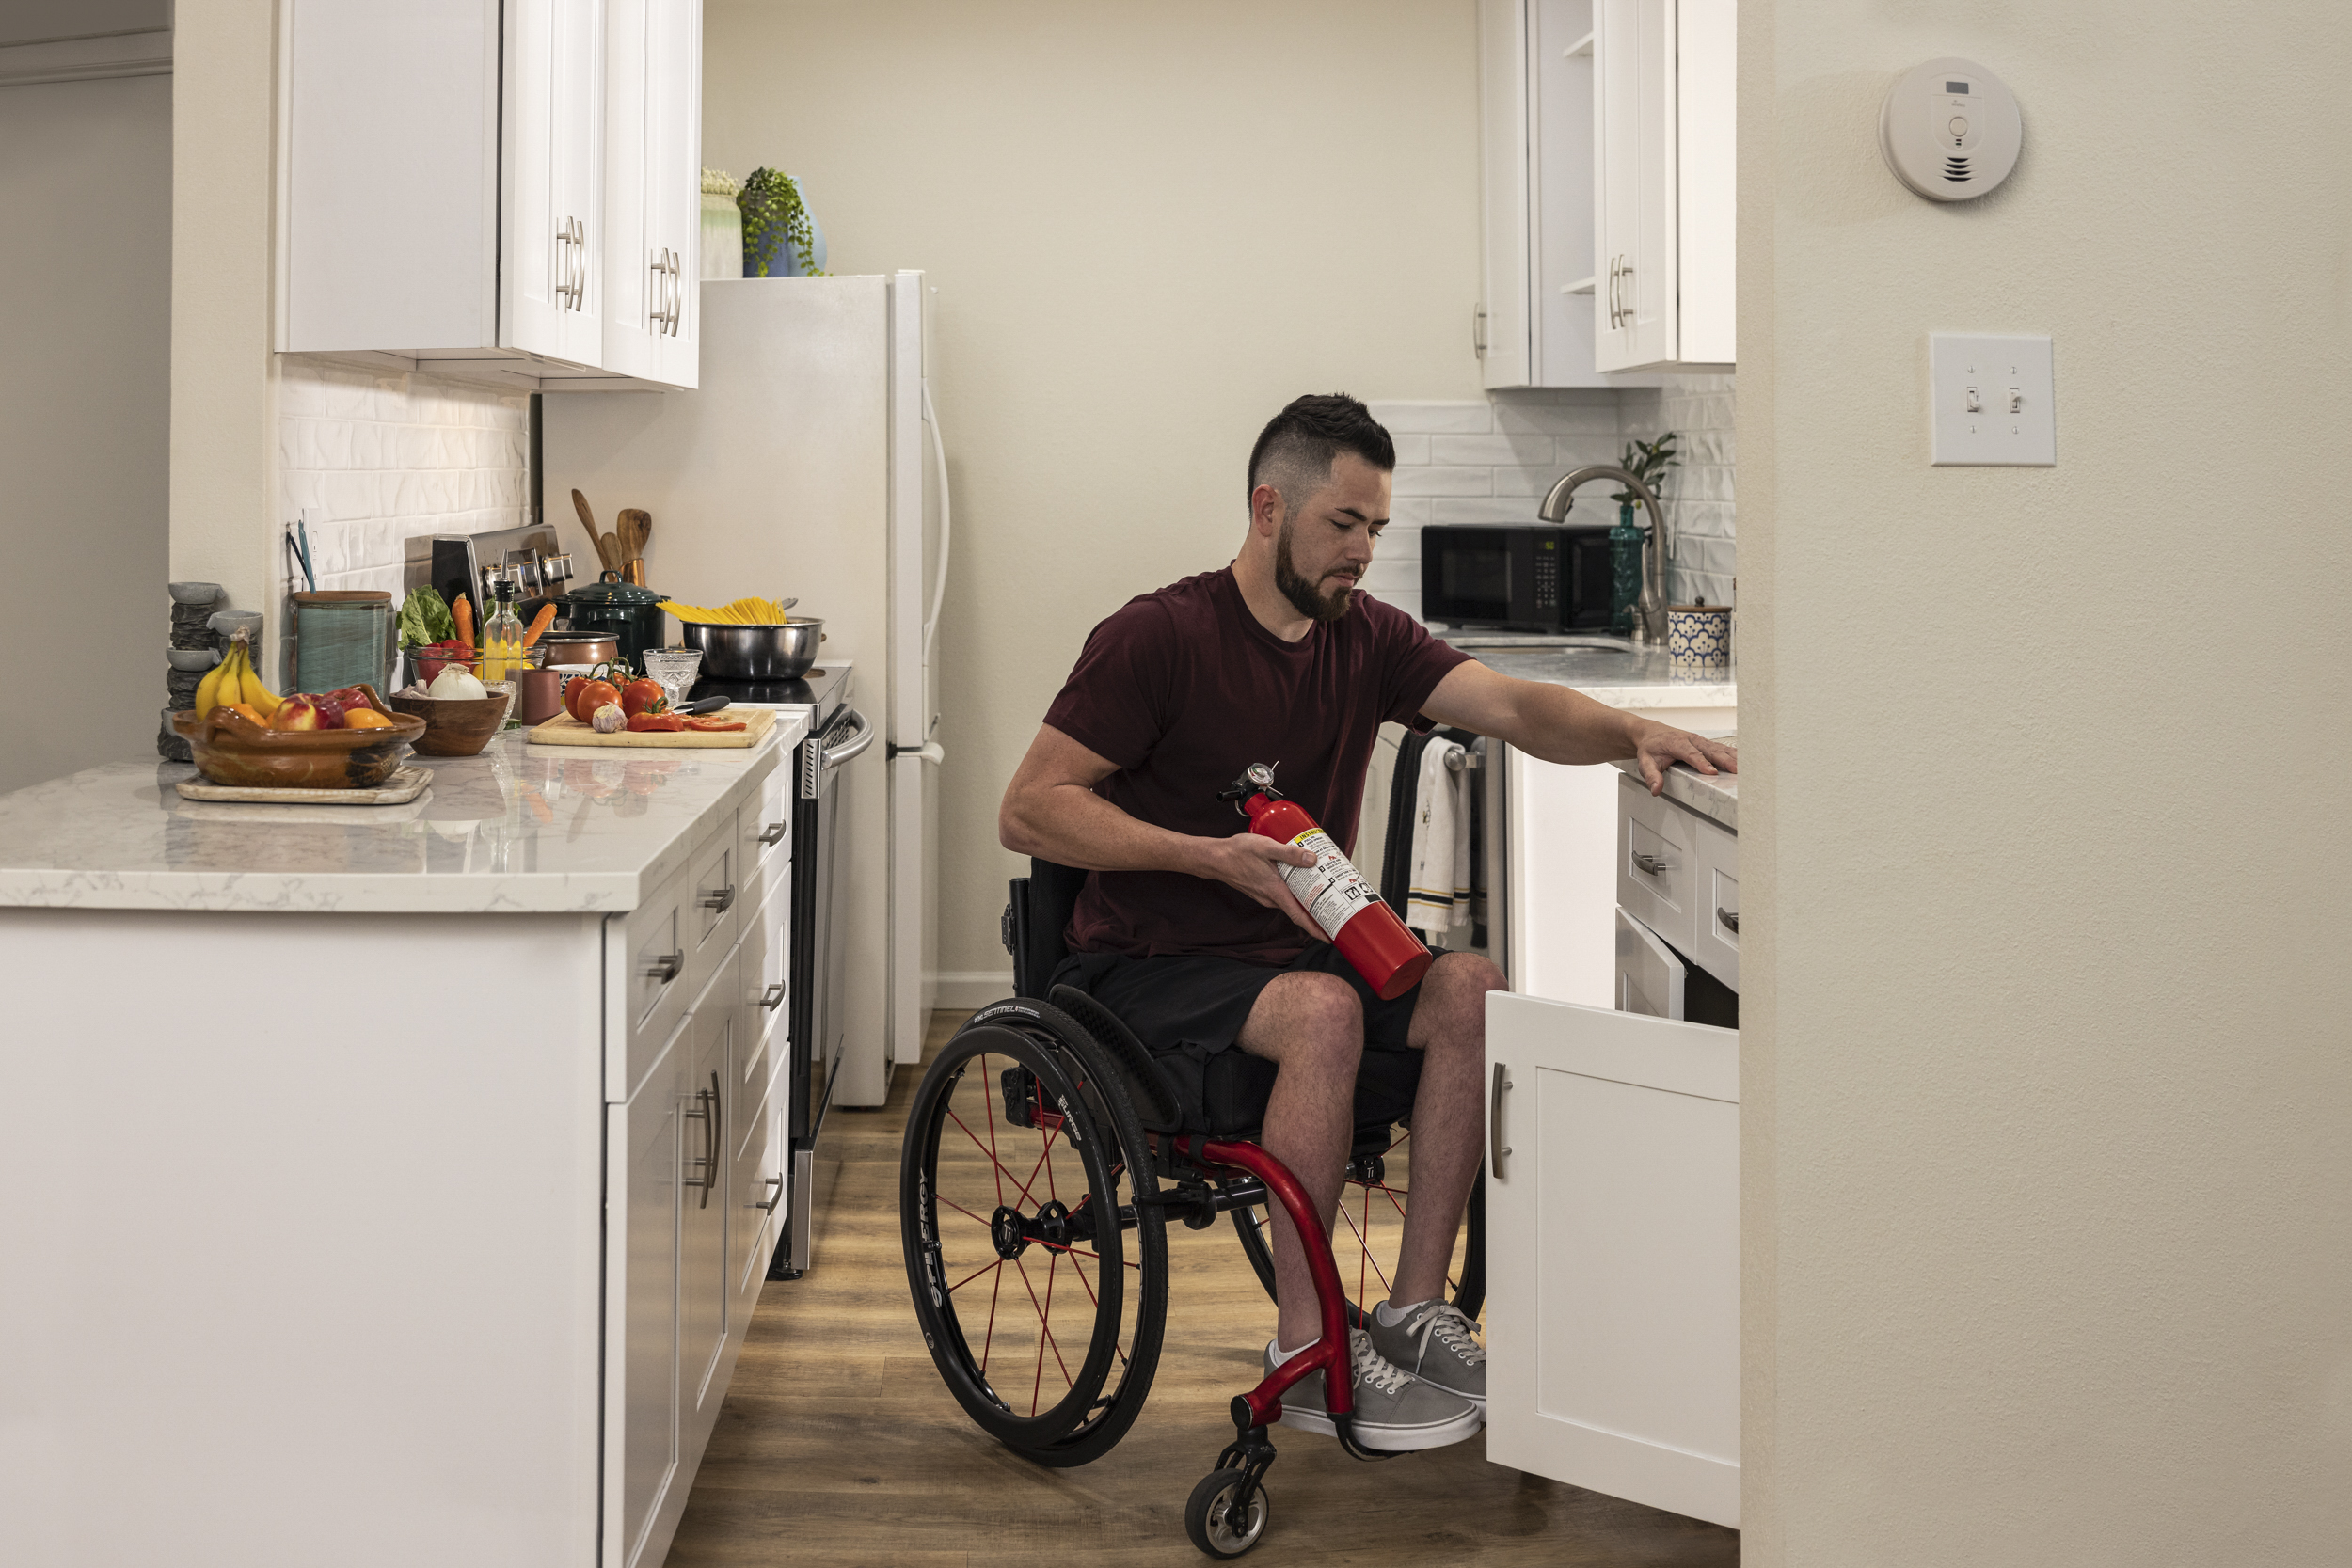 Seguridad contra incendios - persona en silla de ruedas guardando un extintor de incendios en su cocina.